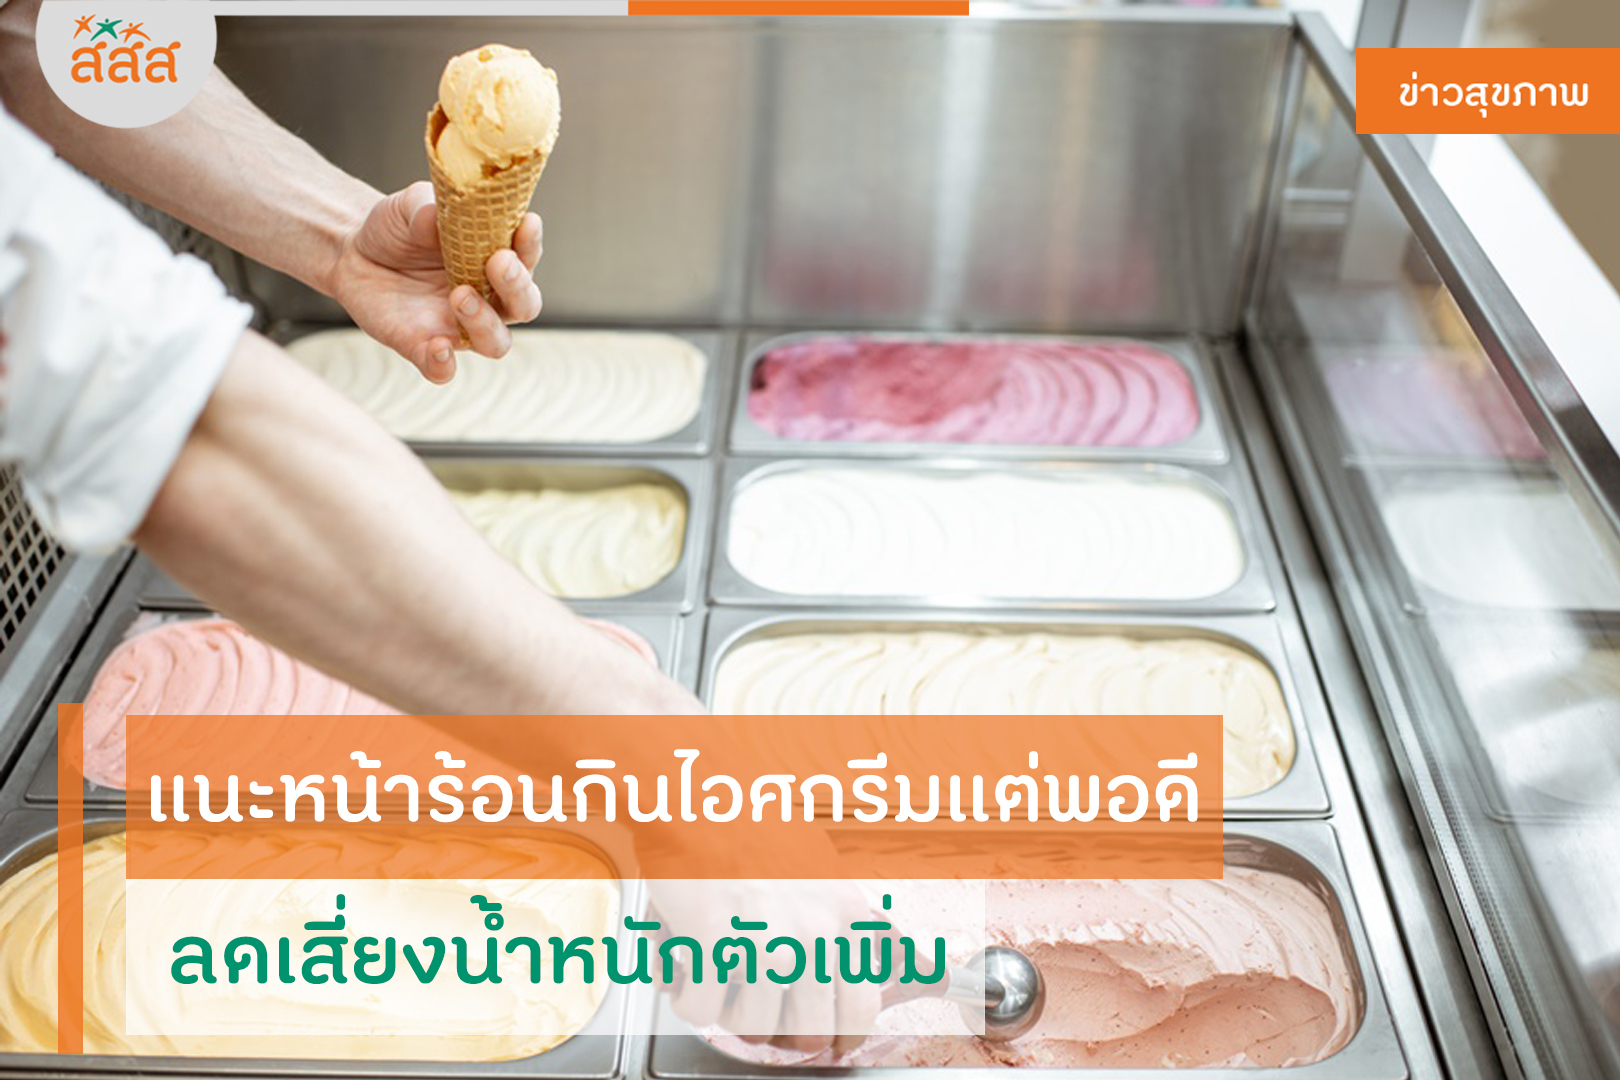 แนะหน้าร้อนกินไอศกรีมแต่พอดี ลดเสี่ยงน้ำหนักตัวเพิ่ม thaihealth